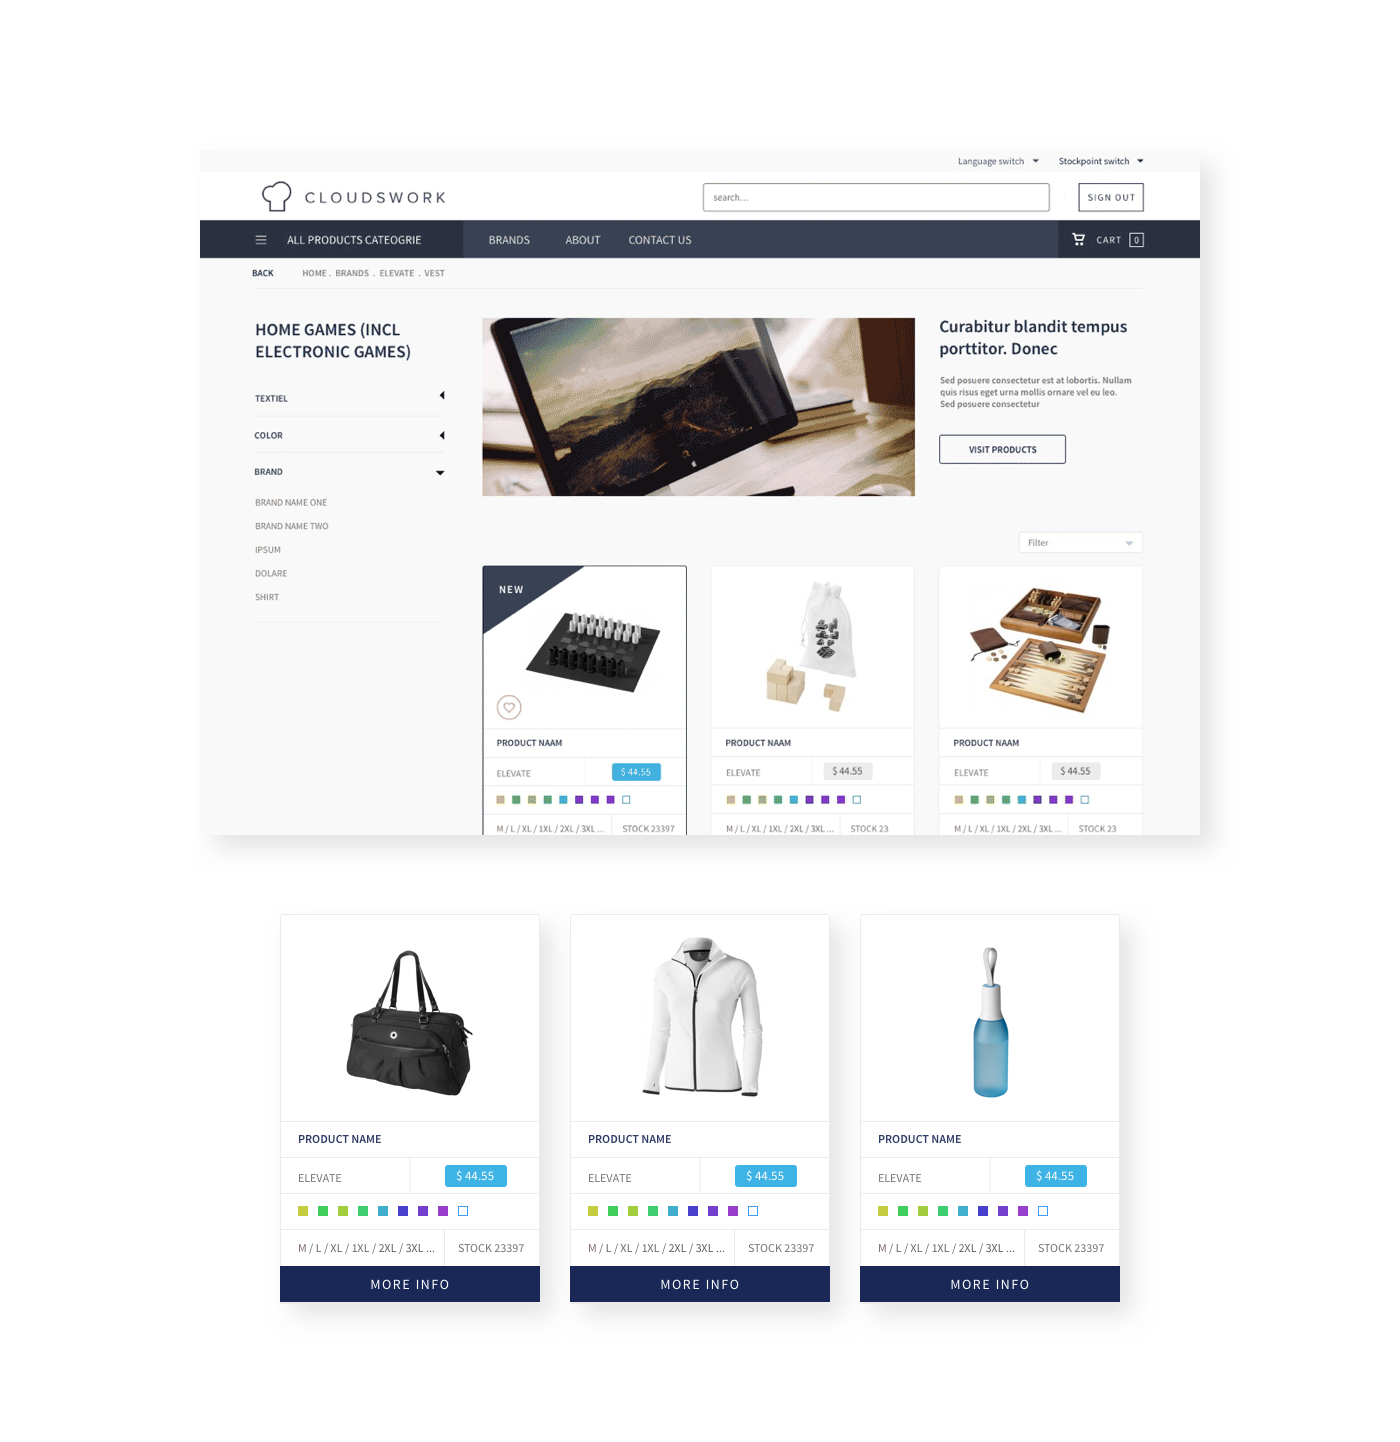 WAAS webshop service stock e-commerce